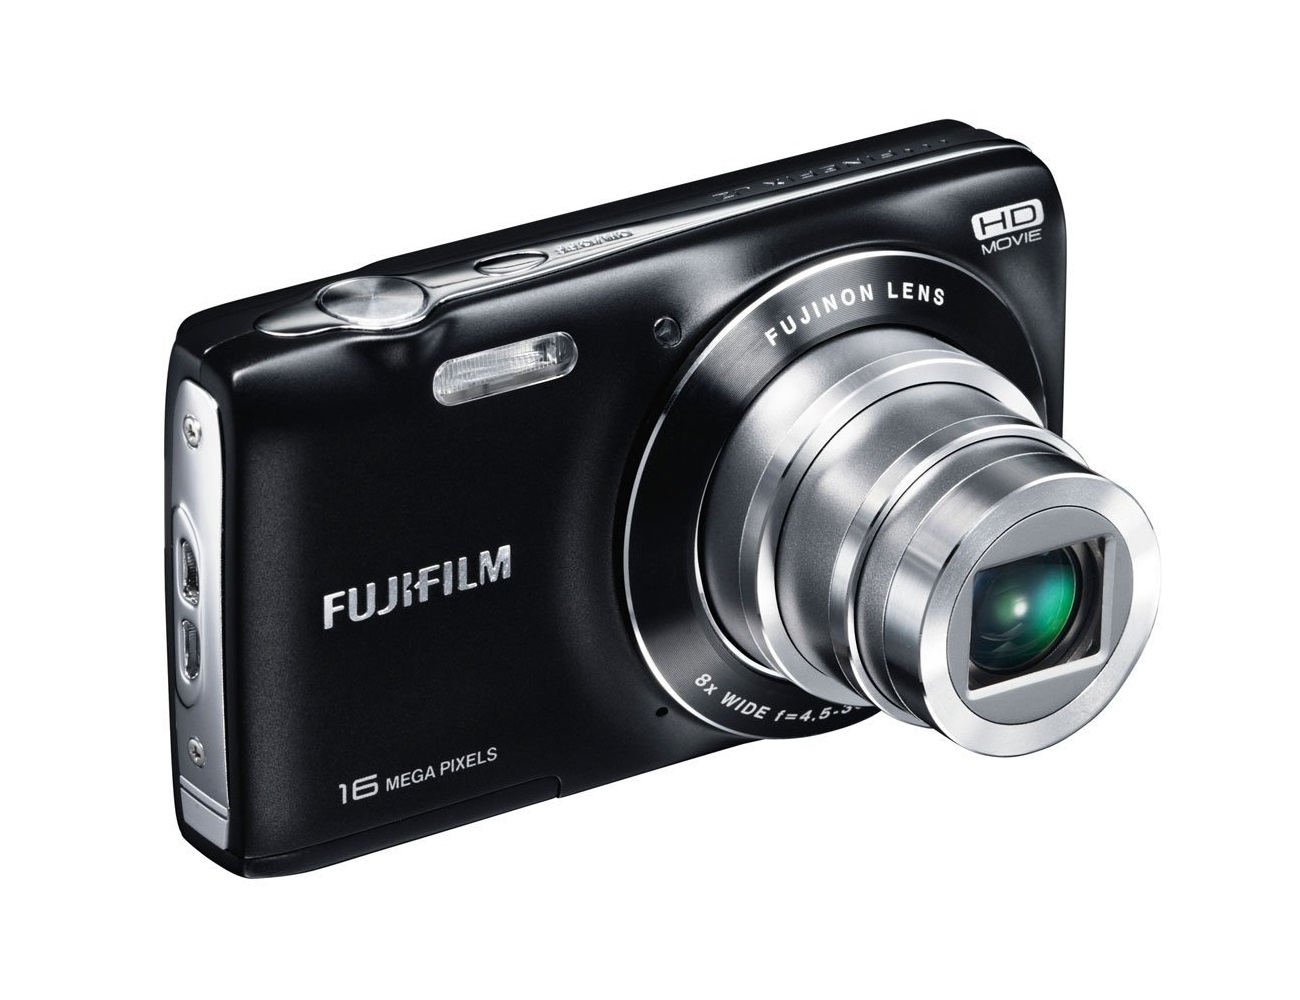 خرید و قیمت دوربین فوجی فیلم fujifilm finepix jz250 (فروش ویژه) - مقداد آیتی